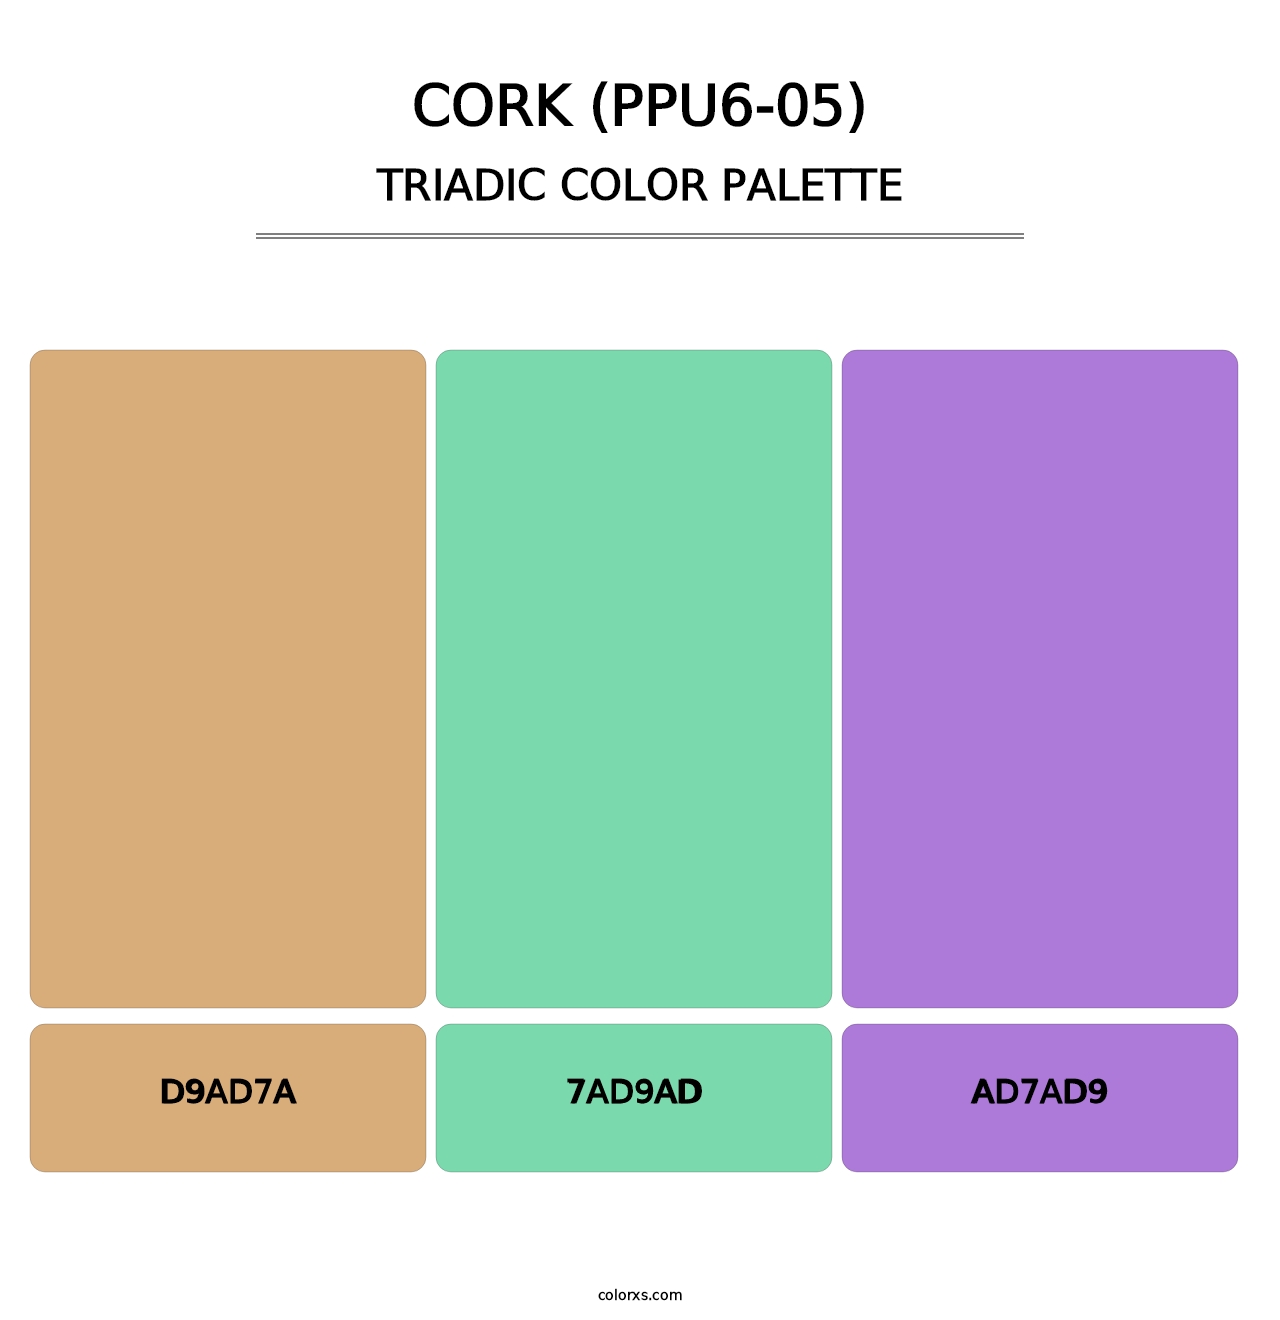 Cork (PPU6-05) - Triadic Color Palette